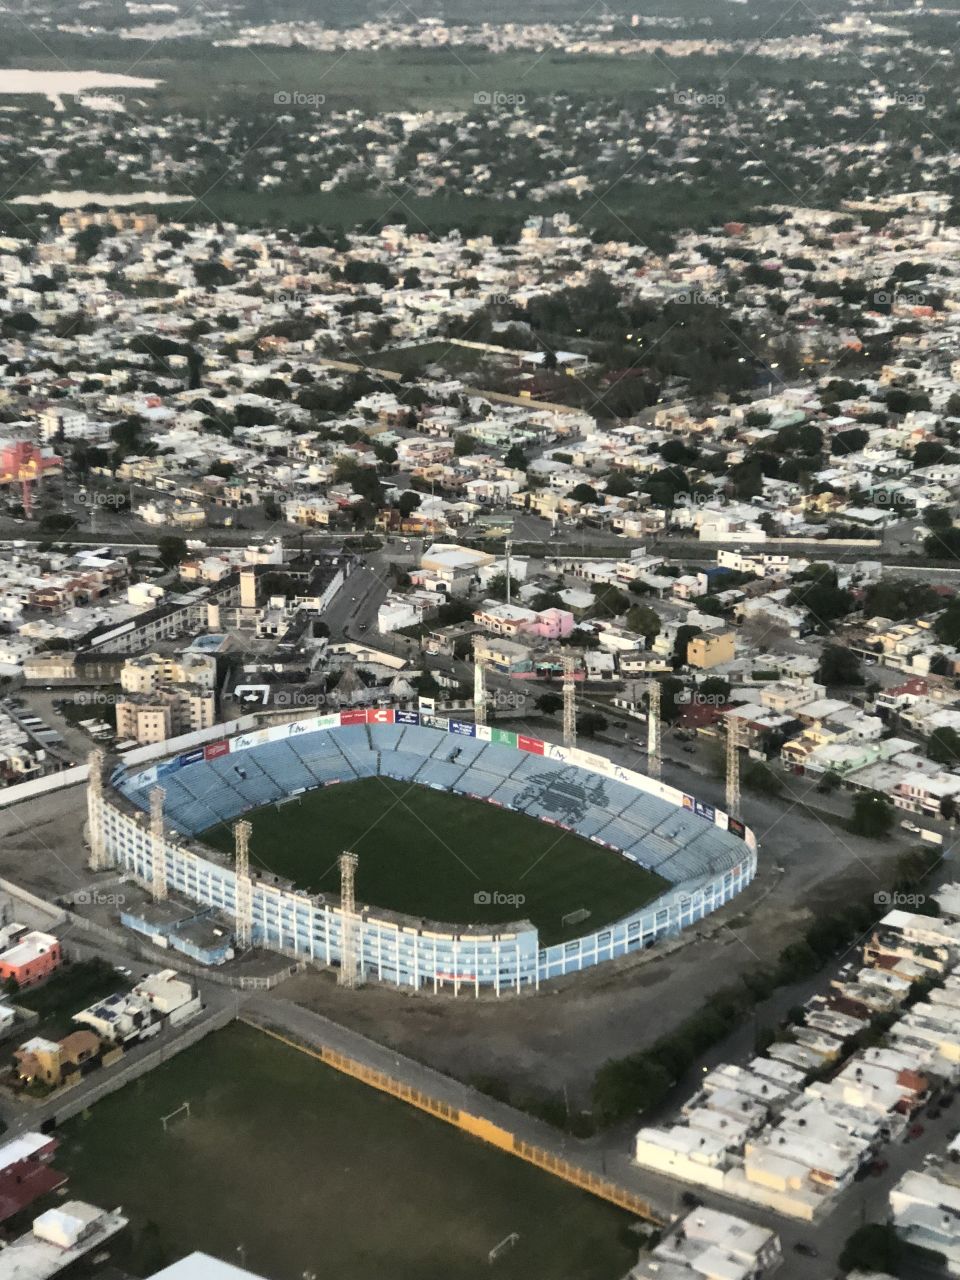 Tampico stadium